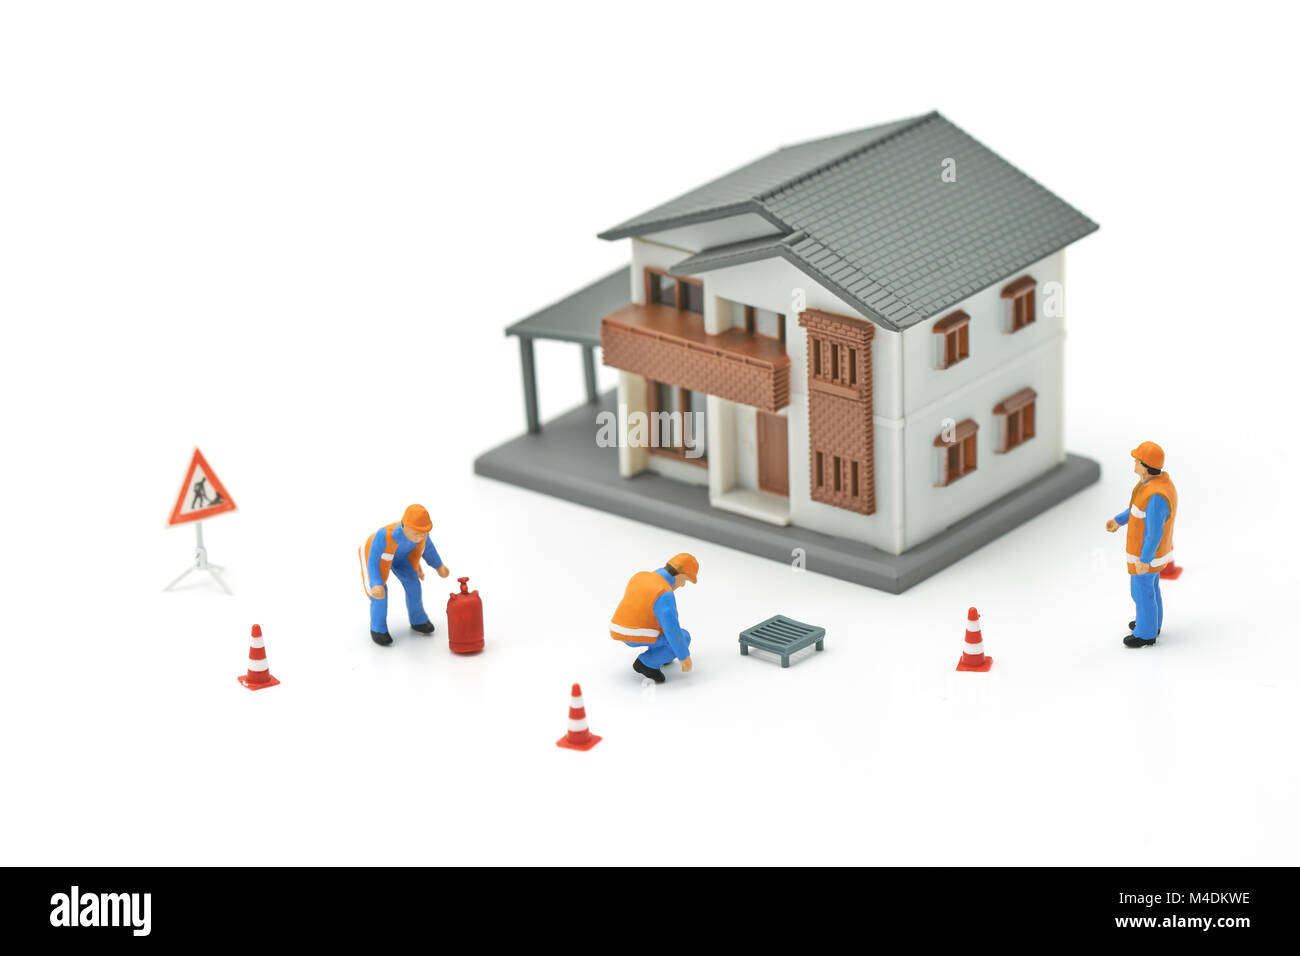 Miniatur Menschen Bauarbeiter Reparatur ein Modell Haus Modell verwenden Sie als Hintergrund Immobilien Konzept und Reparatur Konzept mit Kopie Raum für Ihre t Stockfoto